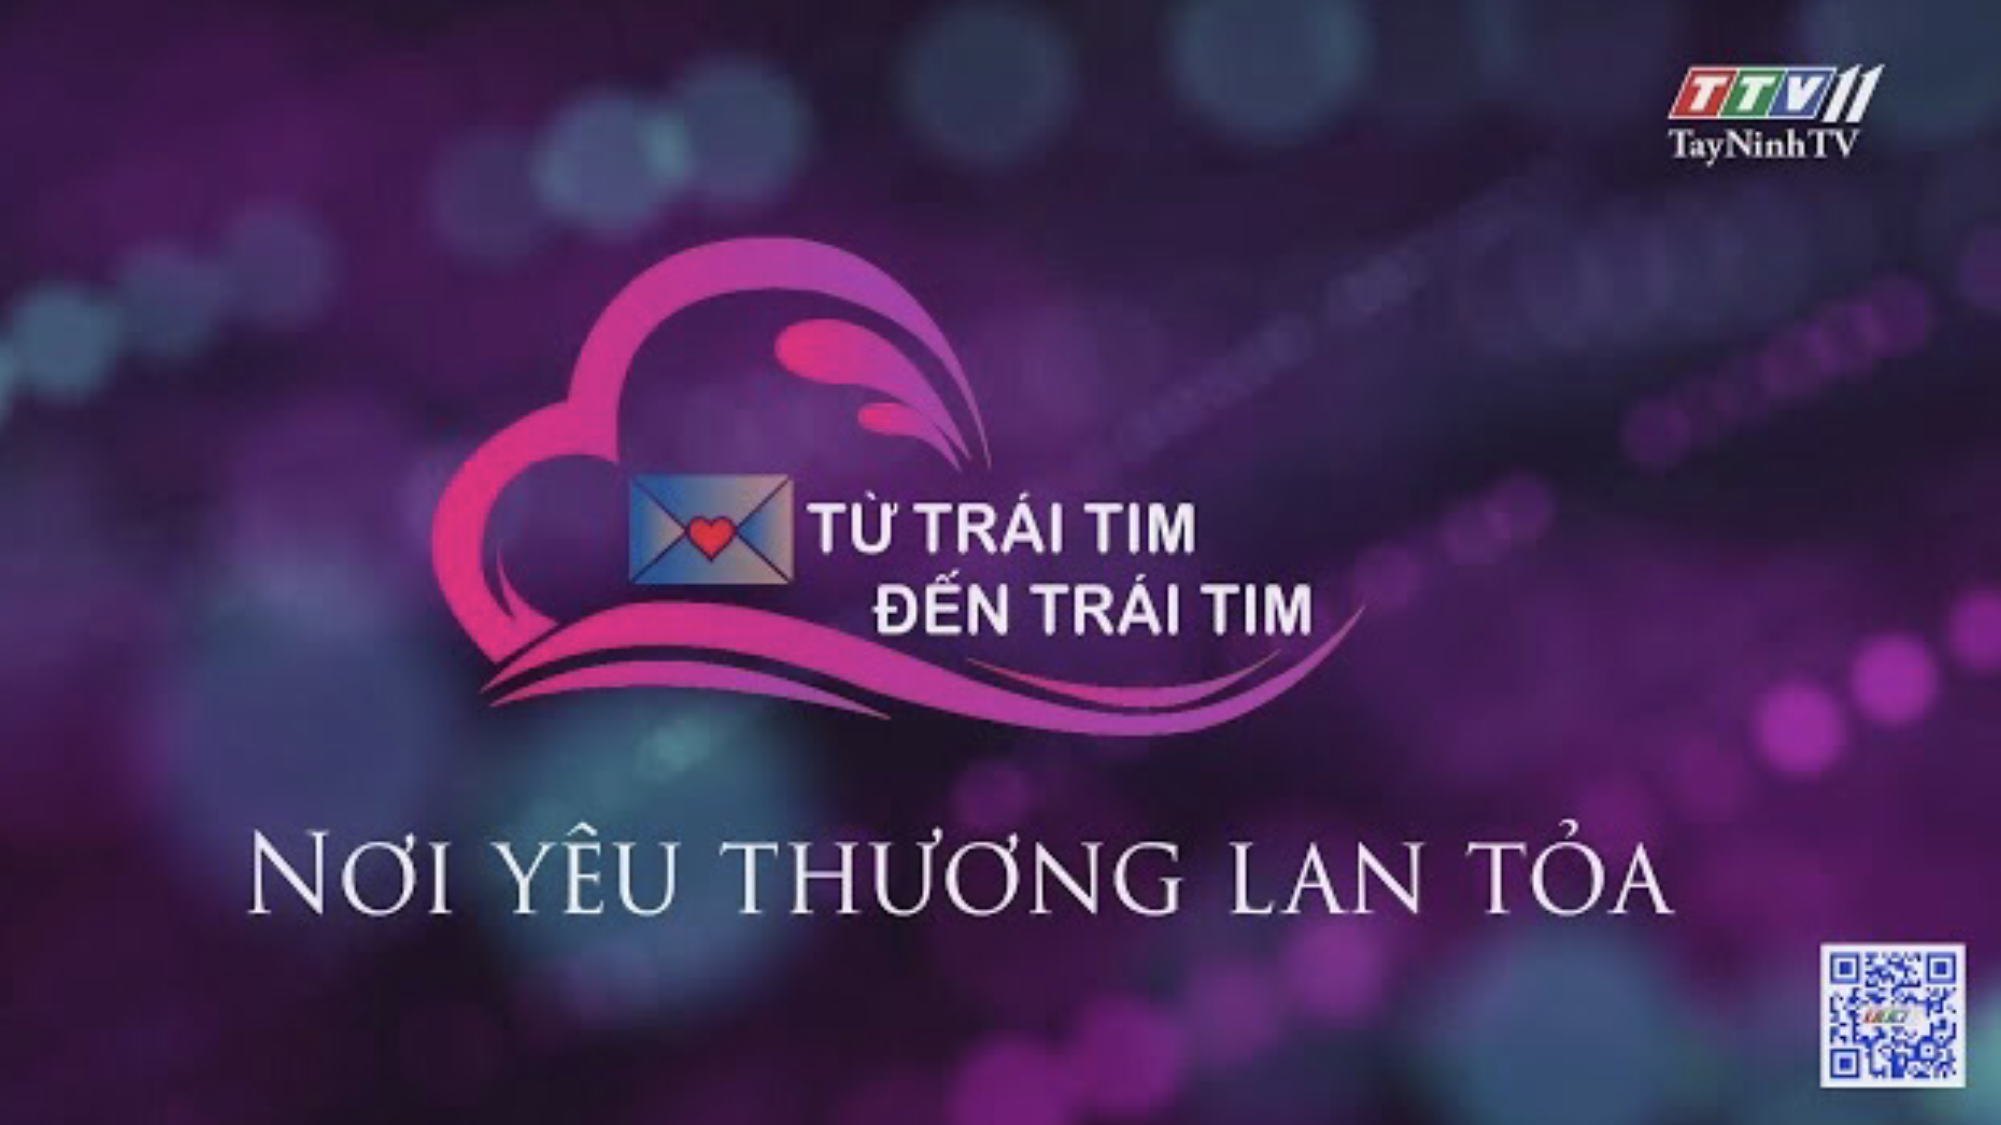 NƠI YÊU THƯƠNG LAN TỎA | Từ trái tim đến trái tim | TayNinhTV